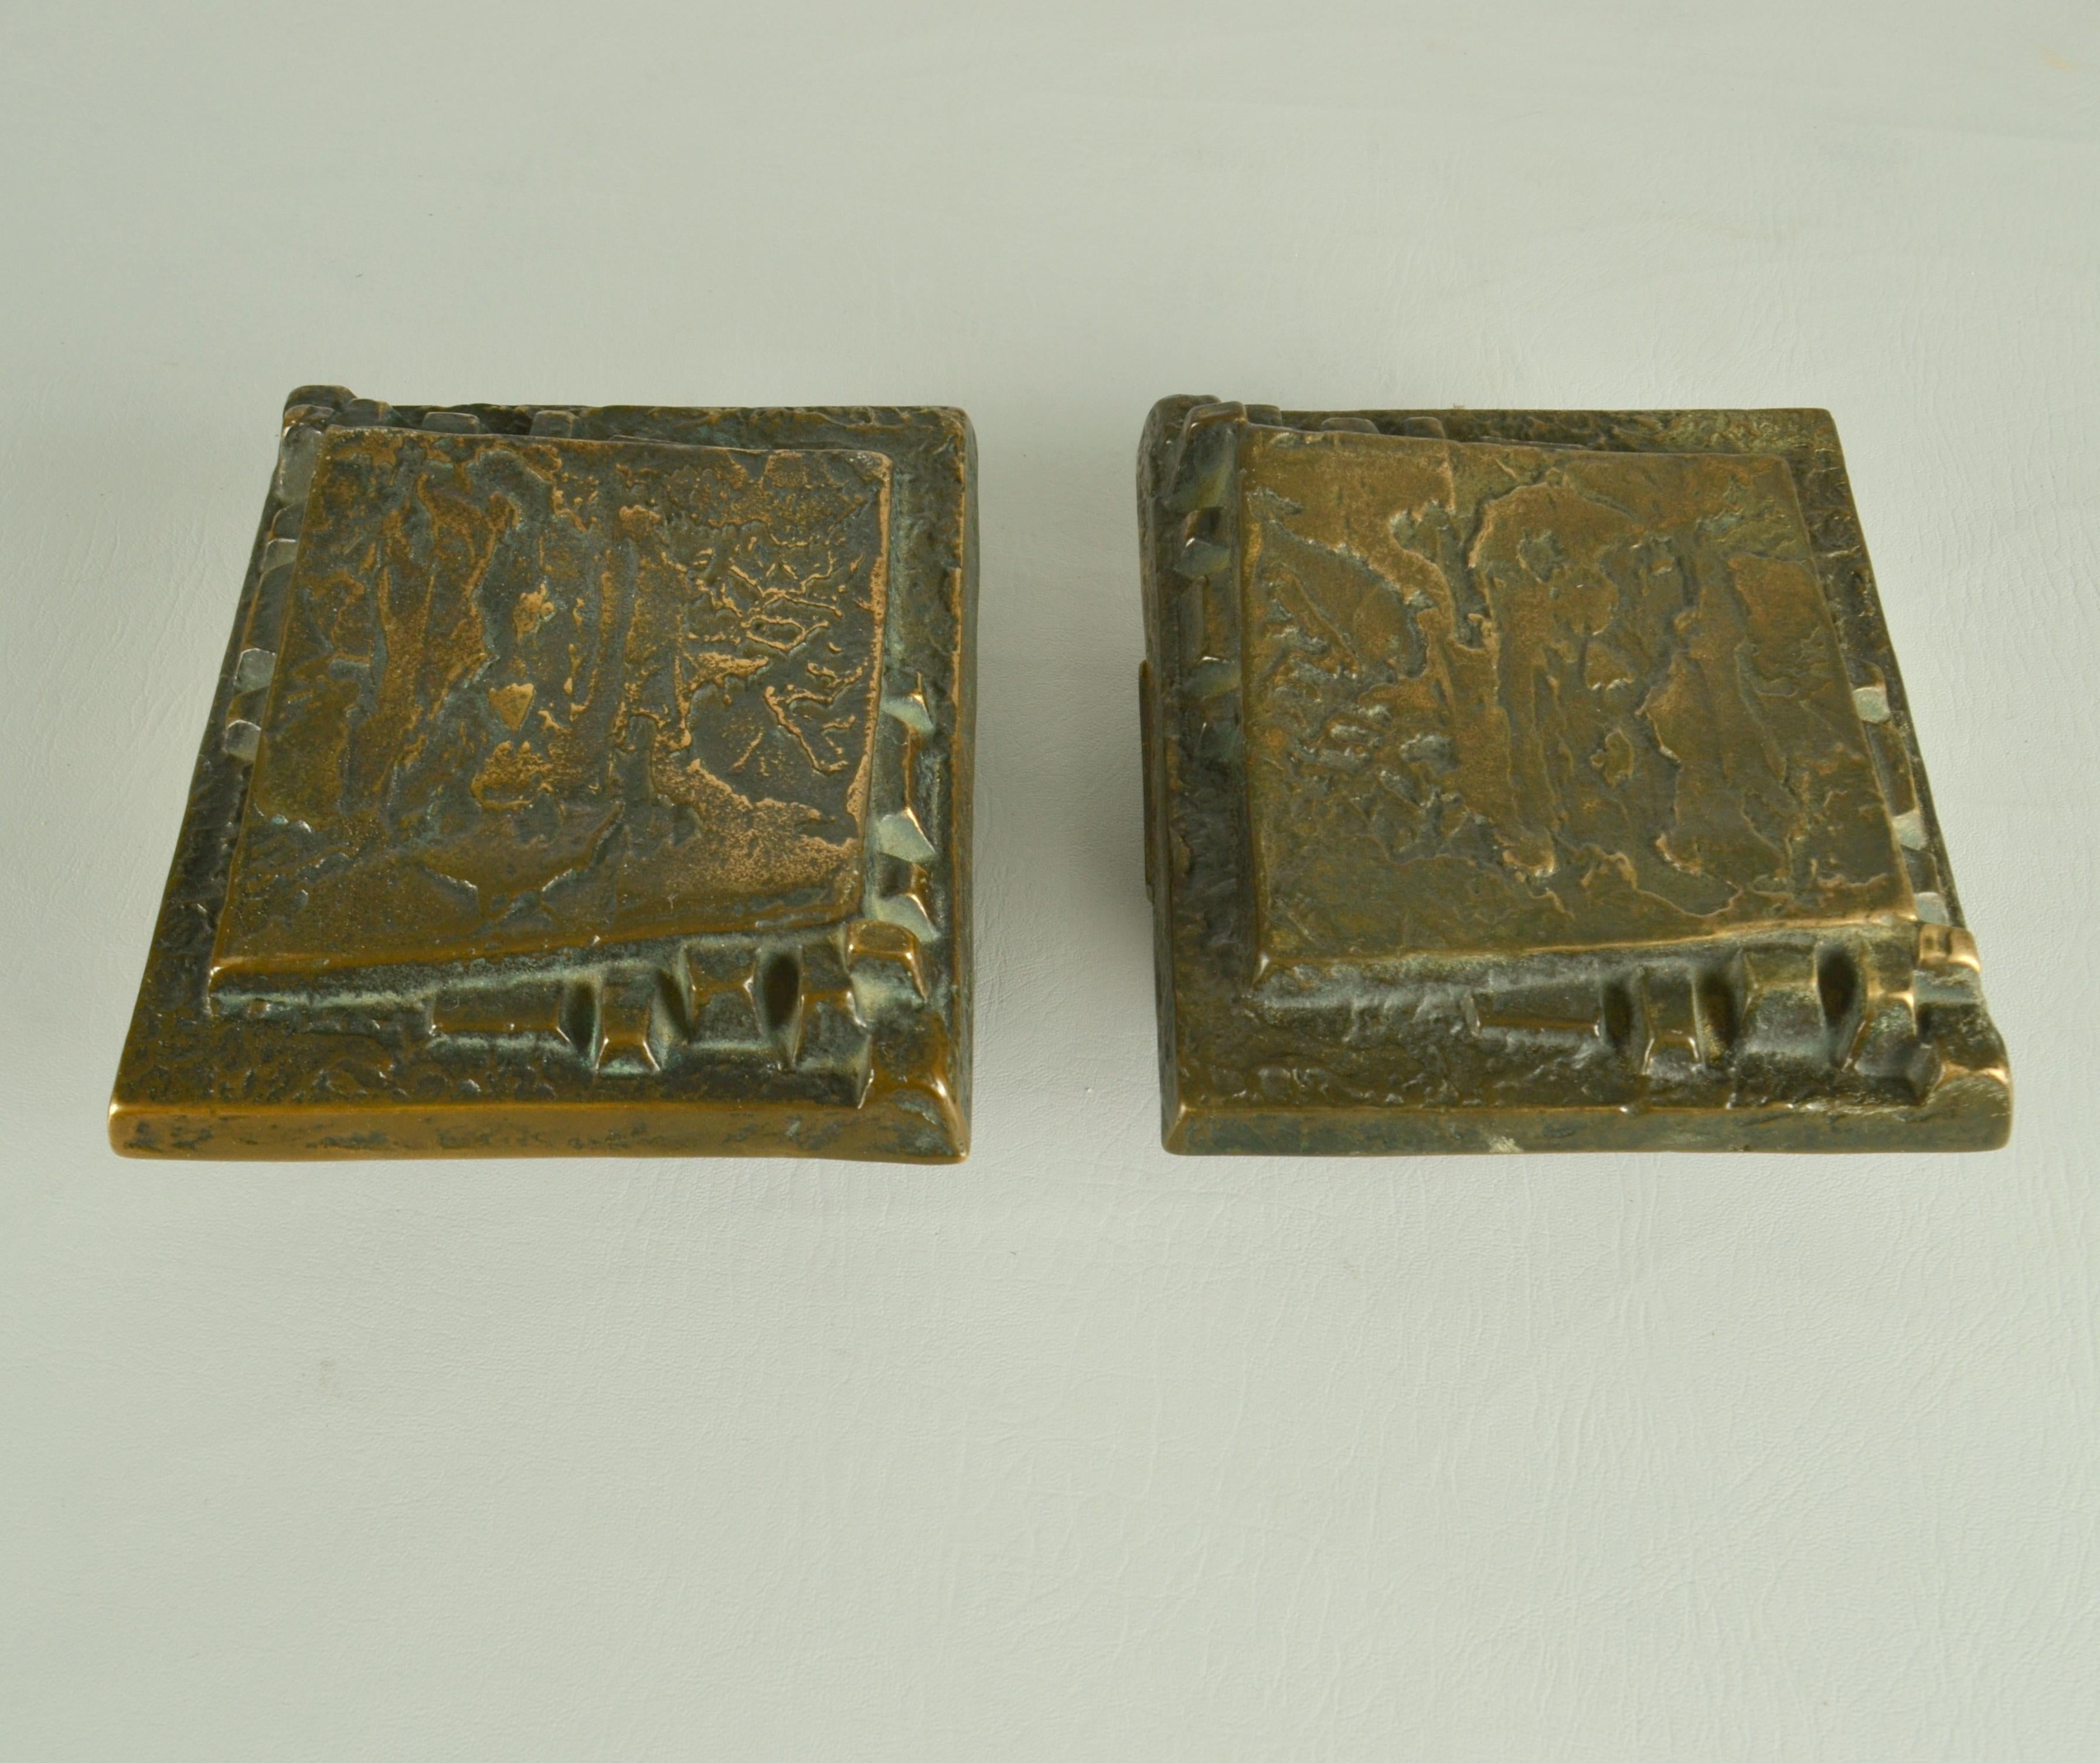 Cast Pair of Bronze Push Pull Door Handles with Relief